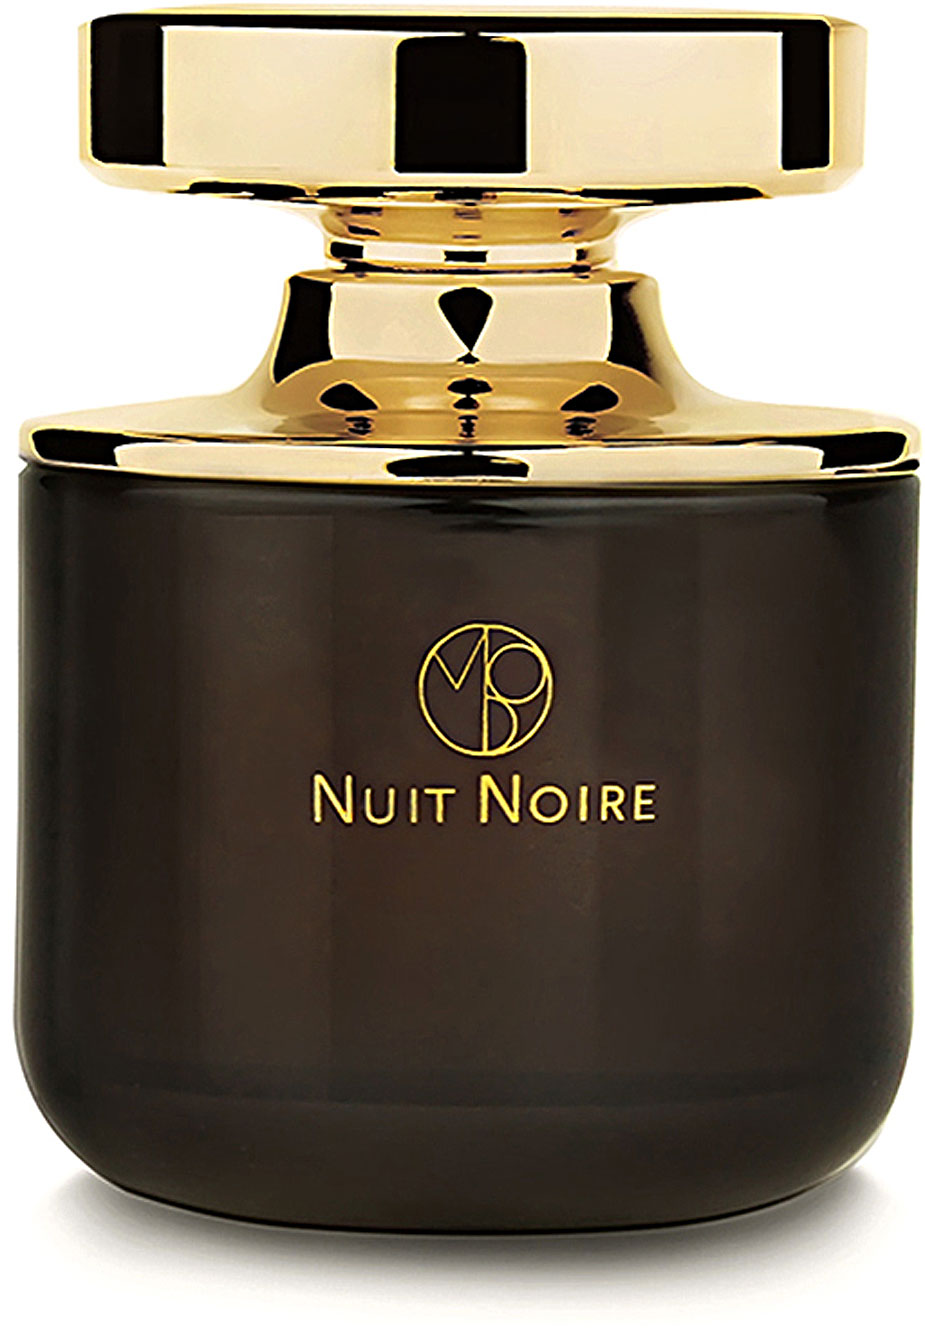 NUIT NOIRE - EAU DE PARFUM - 75 ML, Mens Fragrances Mona di Orio, Style ...